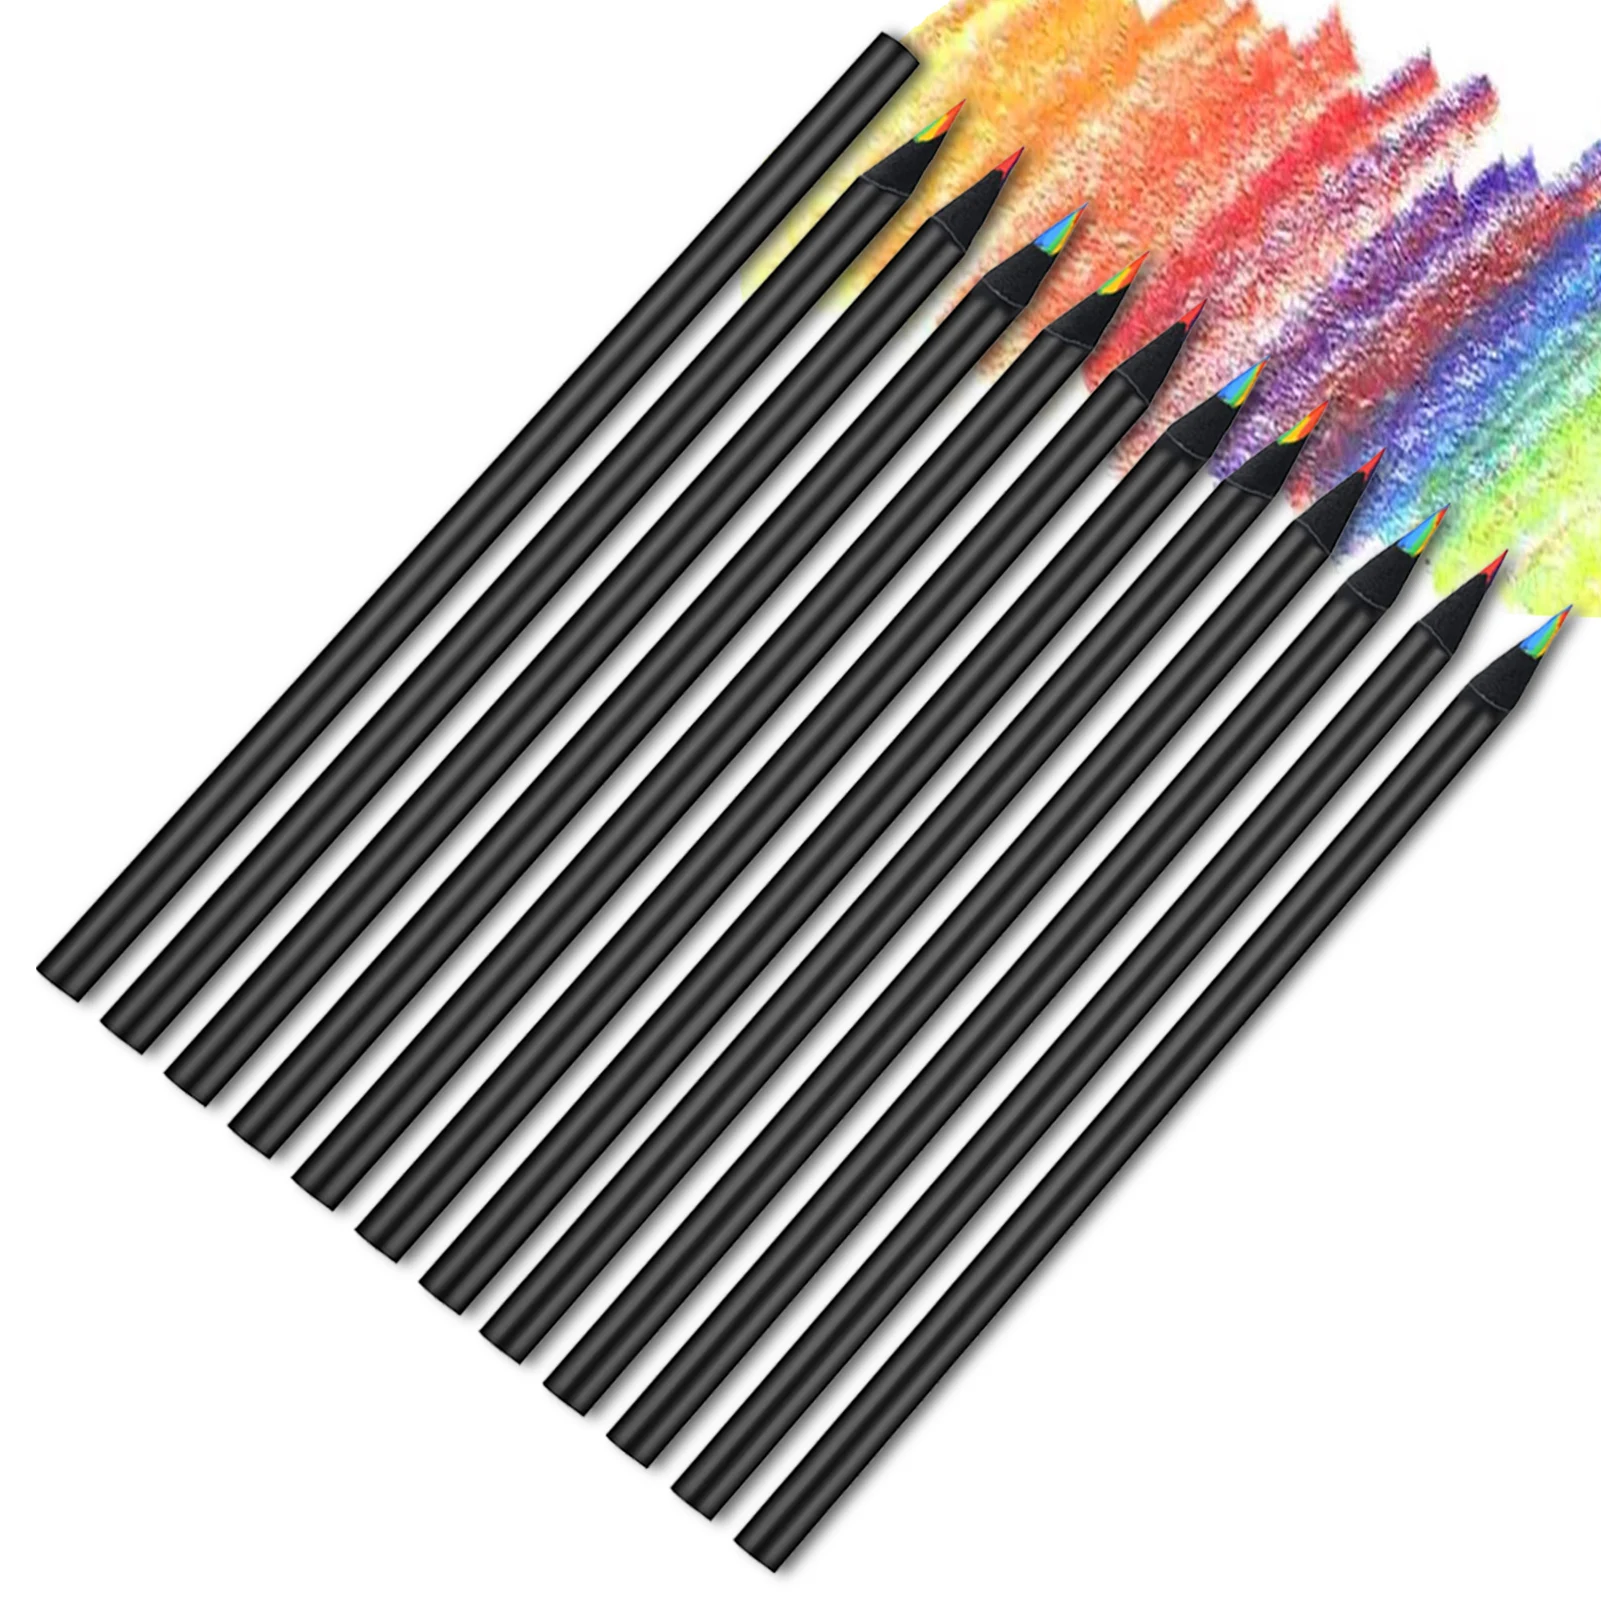 

12 шт. разноцветные офисные черные деревянные рисунки, разноцветные радужные карандаши для набросков, безопасные прочные карандаши для детей и взрослых